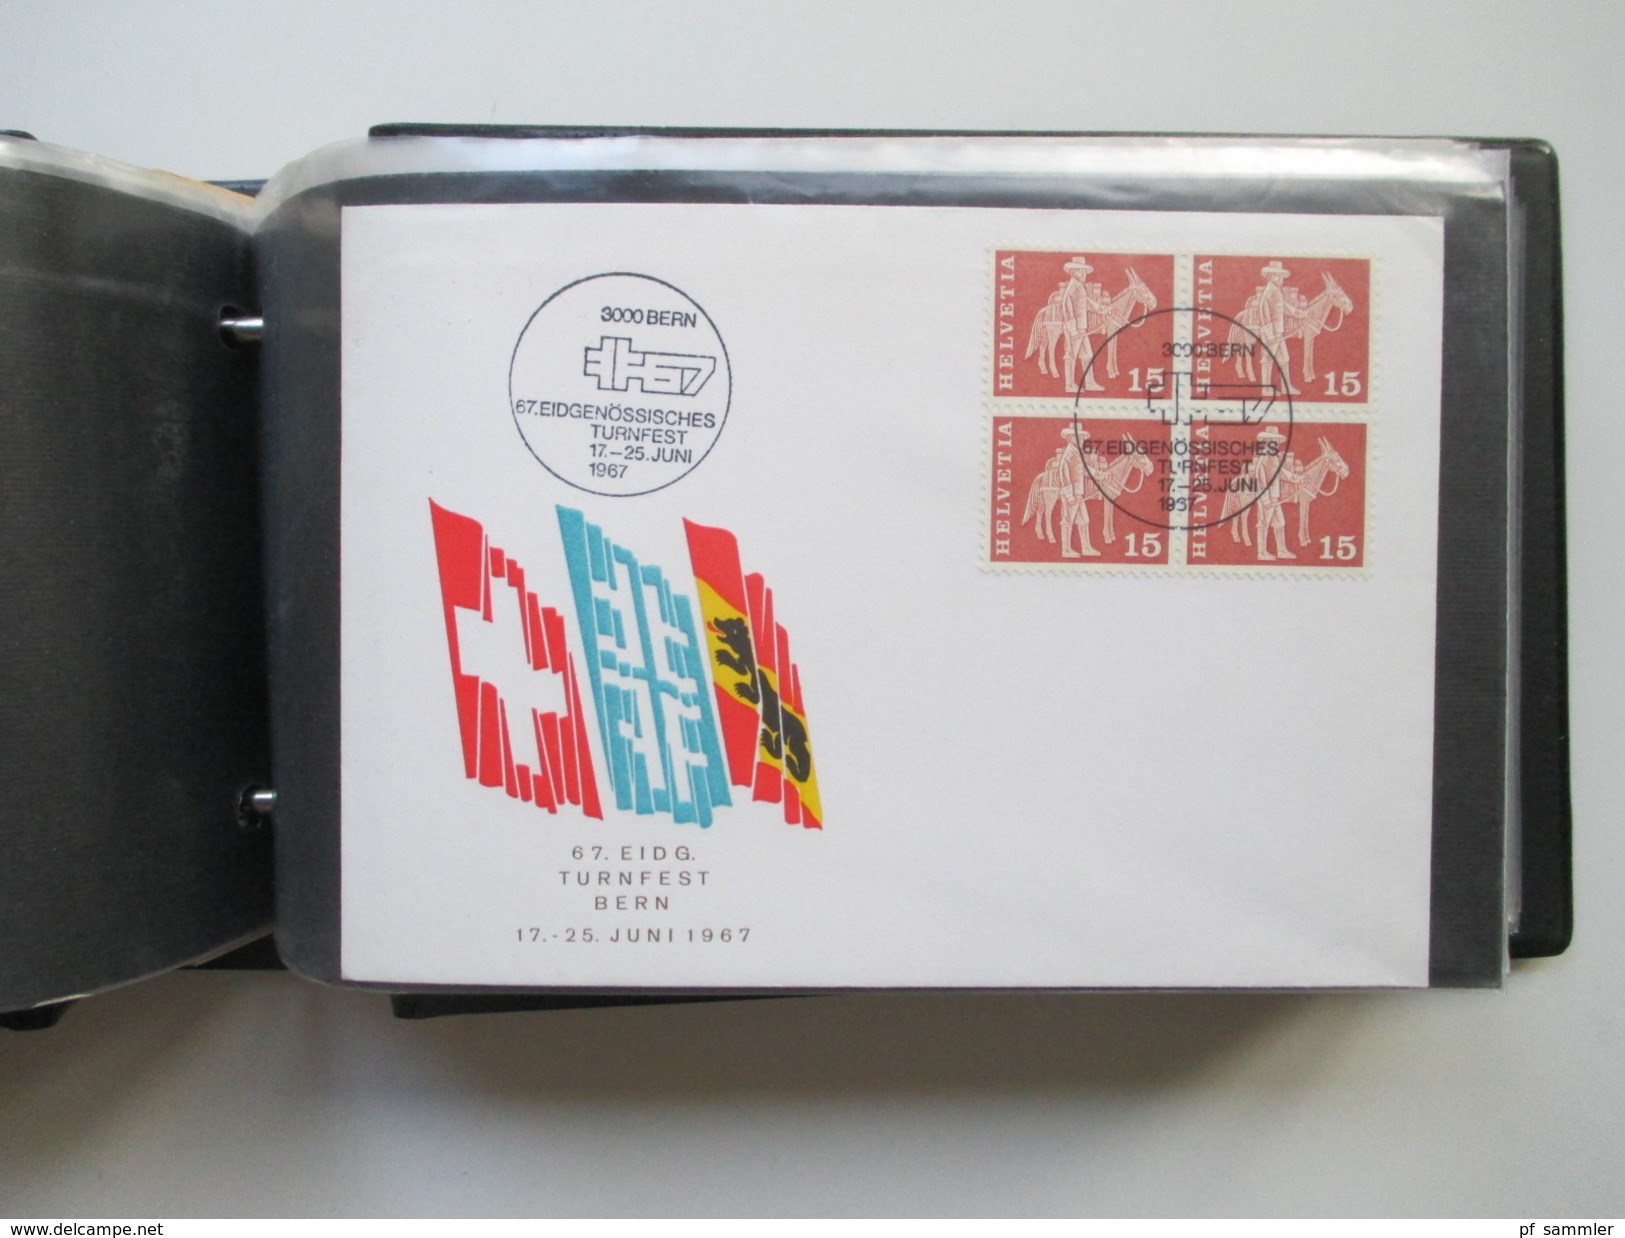 Schweiz 1956 -80er Jahre Belegesammlung 200 stk. Pro Juventute / Randstücke / FDC / Sonderstempel / 4er Blocks / Blocks